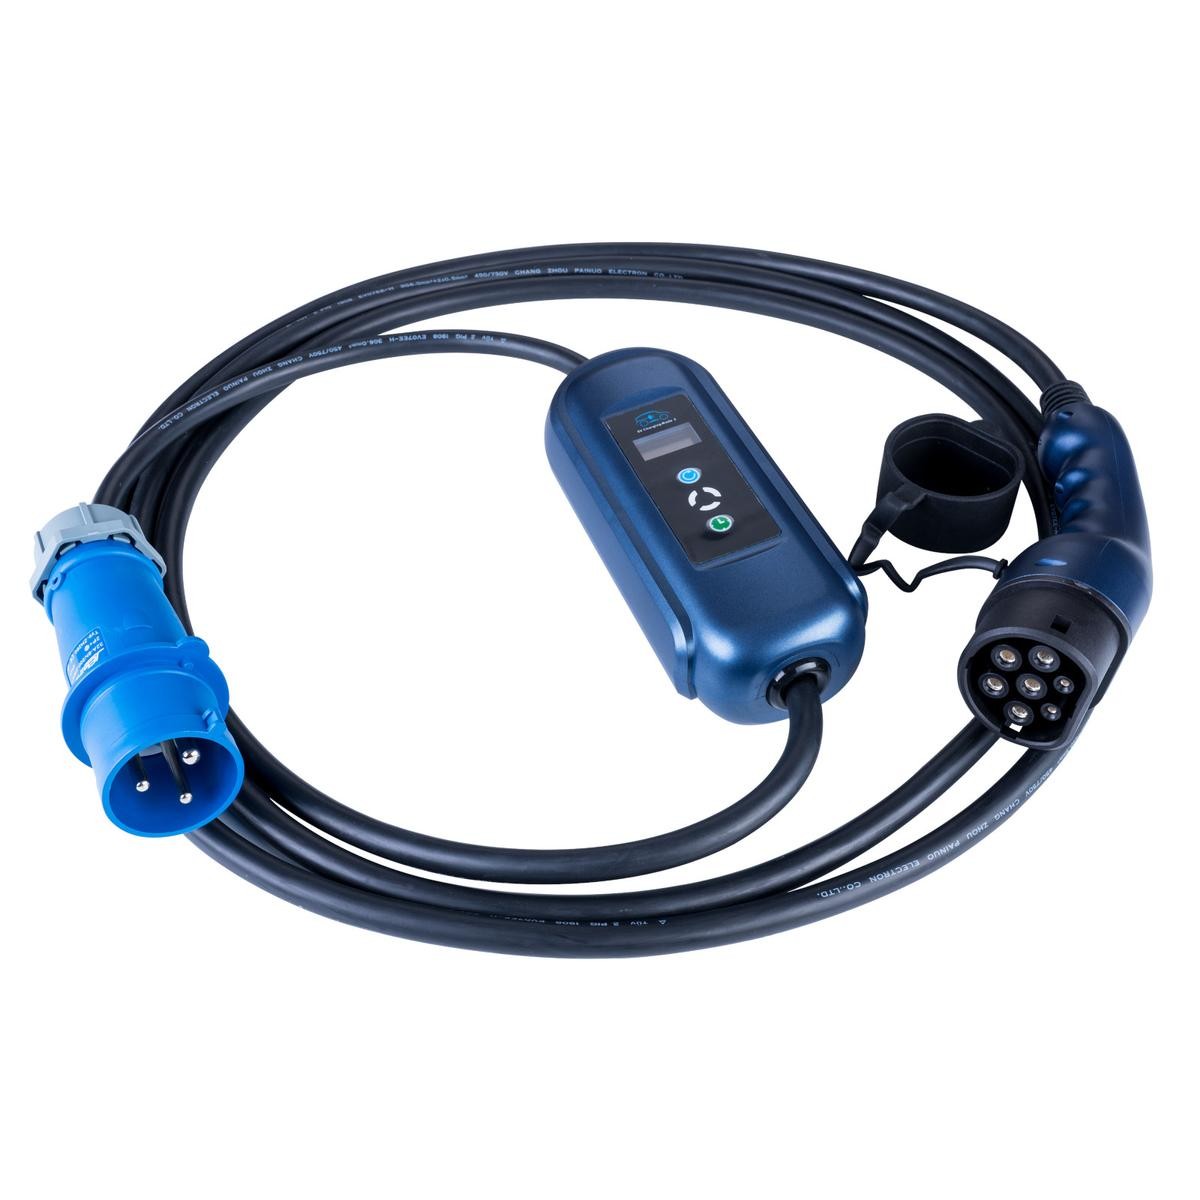 Câble électrique pour voiture 1,5 mm² 5 m bleu CARPOINT